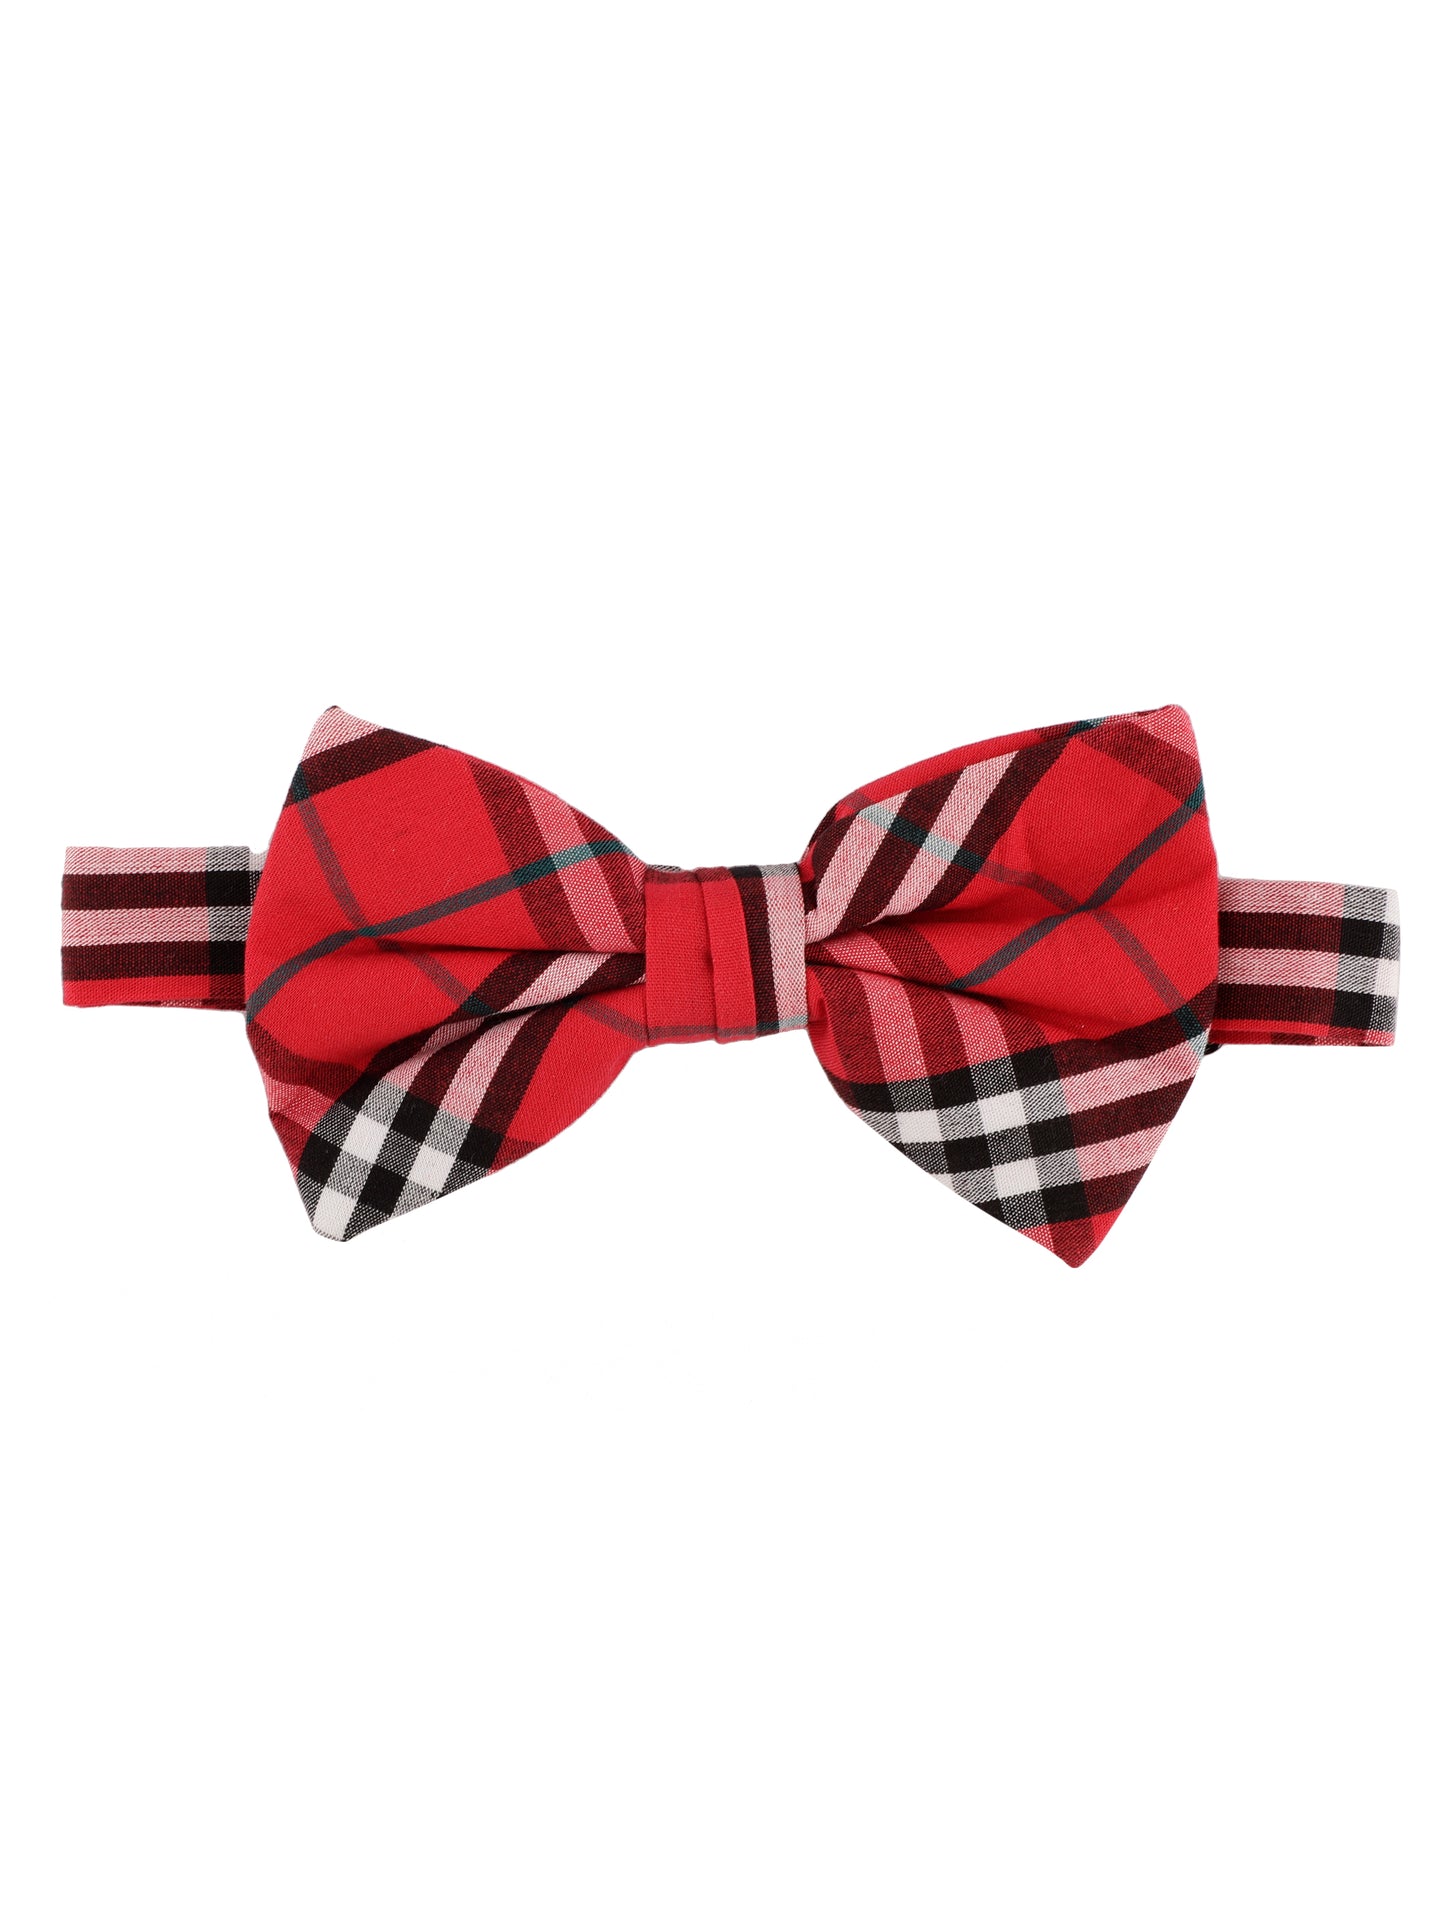 Alvaro Castagnino Men Red & Multicolored Striped Bow Tie